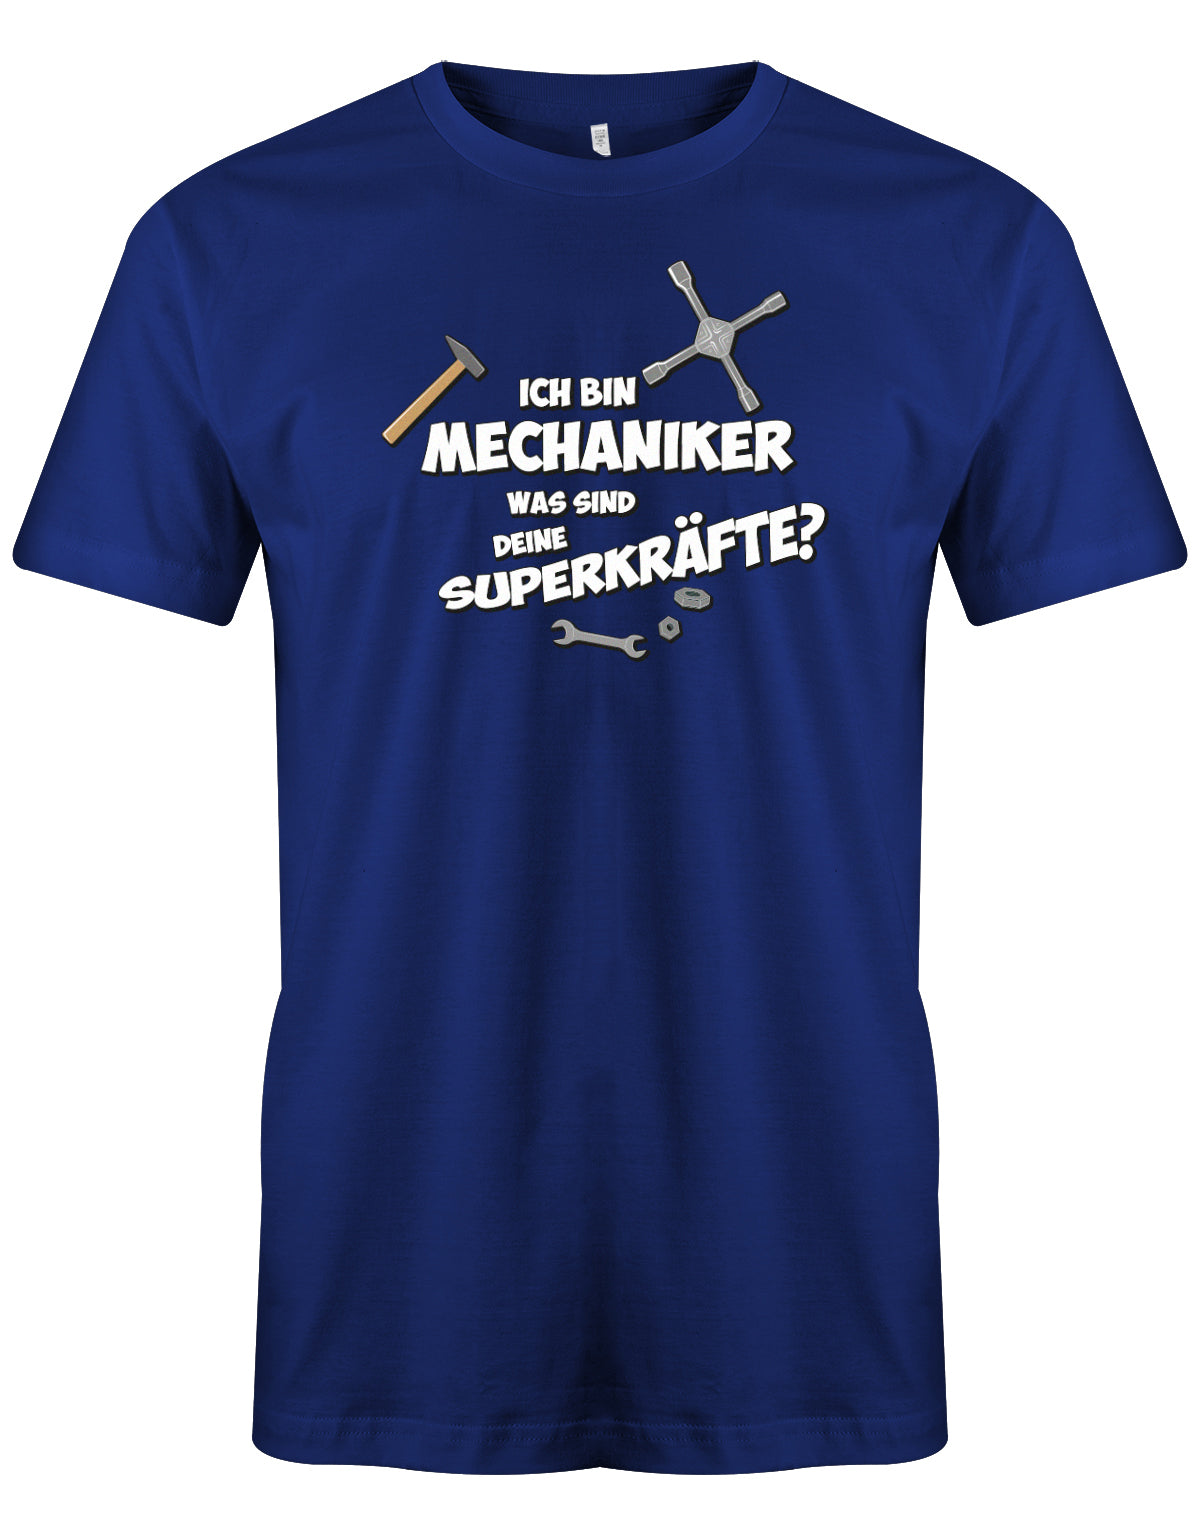 KFZ Mechaniker Shirt - Ich bin Mechaniker was sind deine Superkräfte? Royalblau